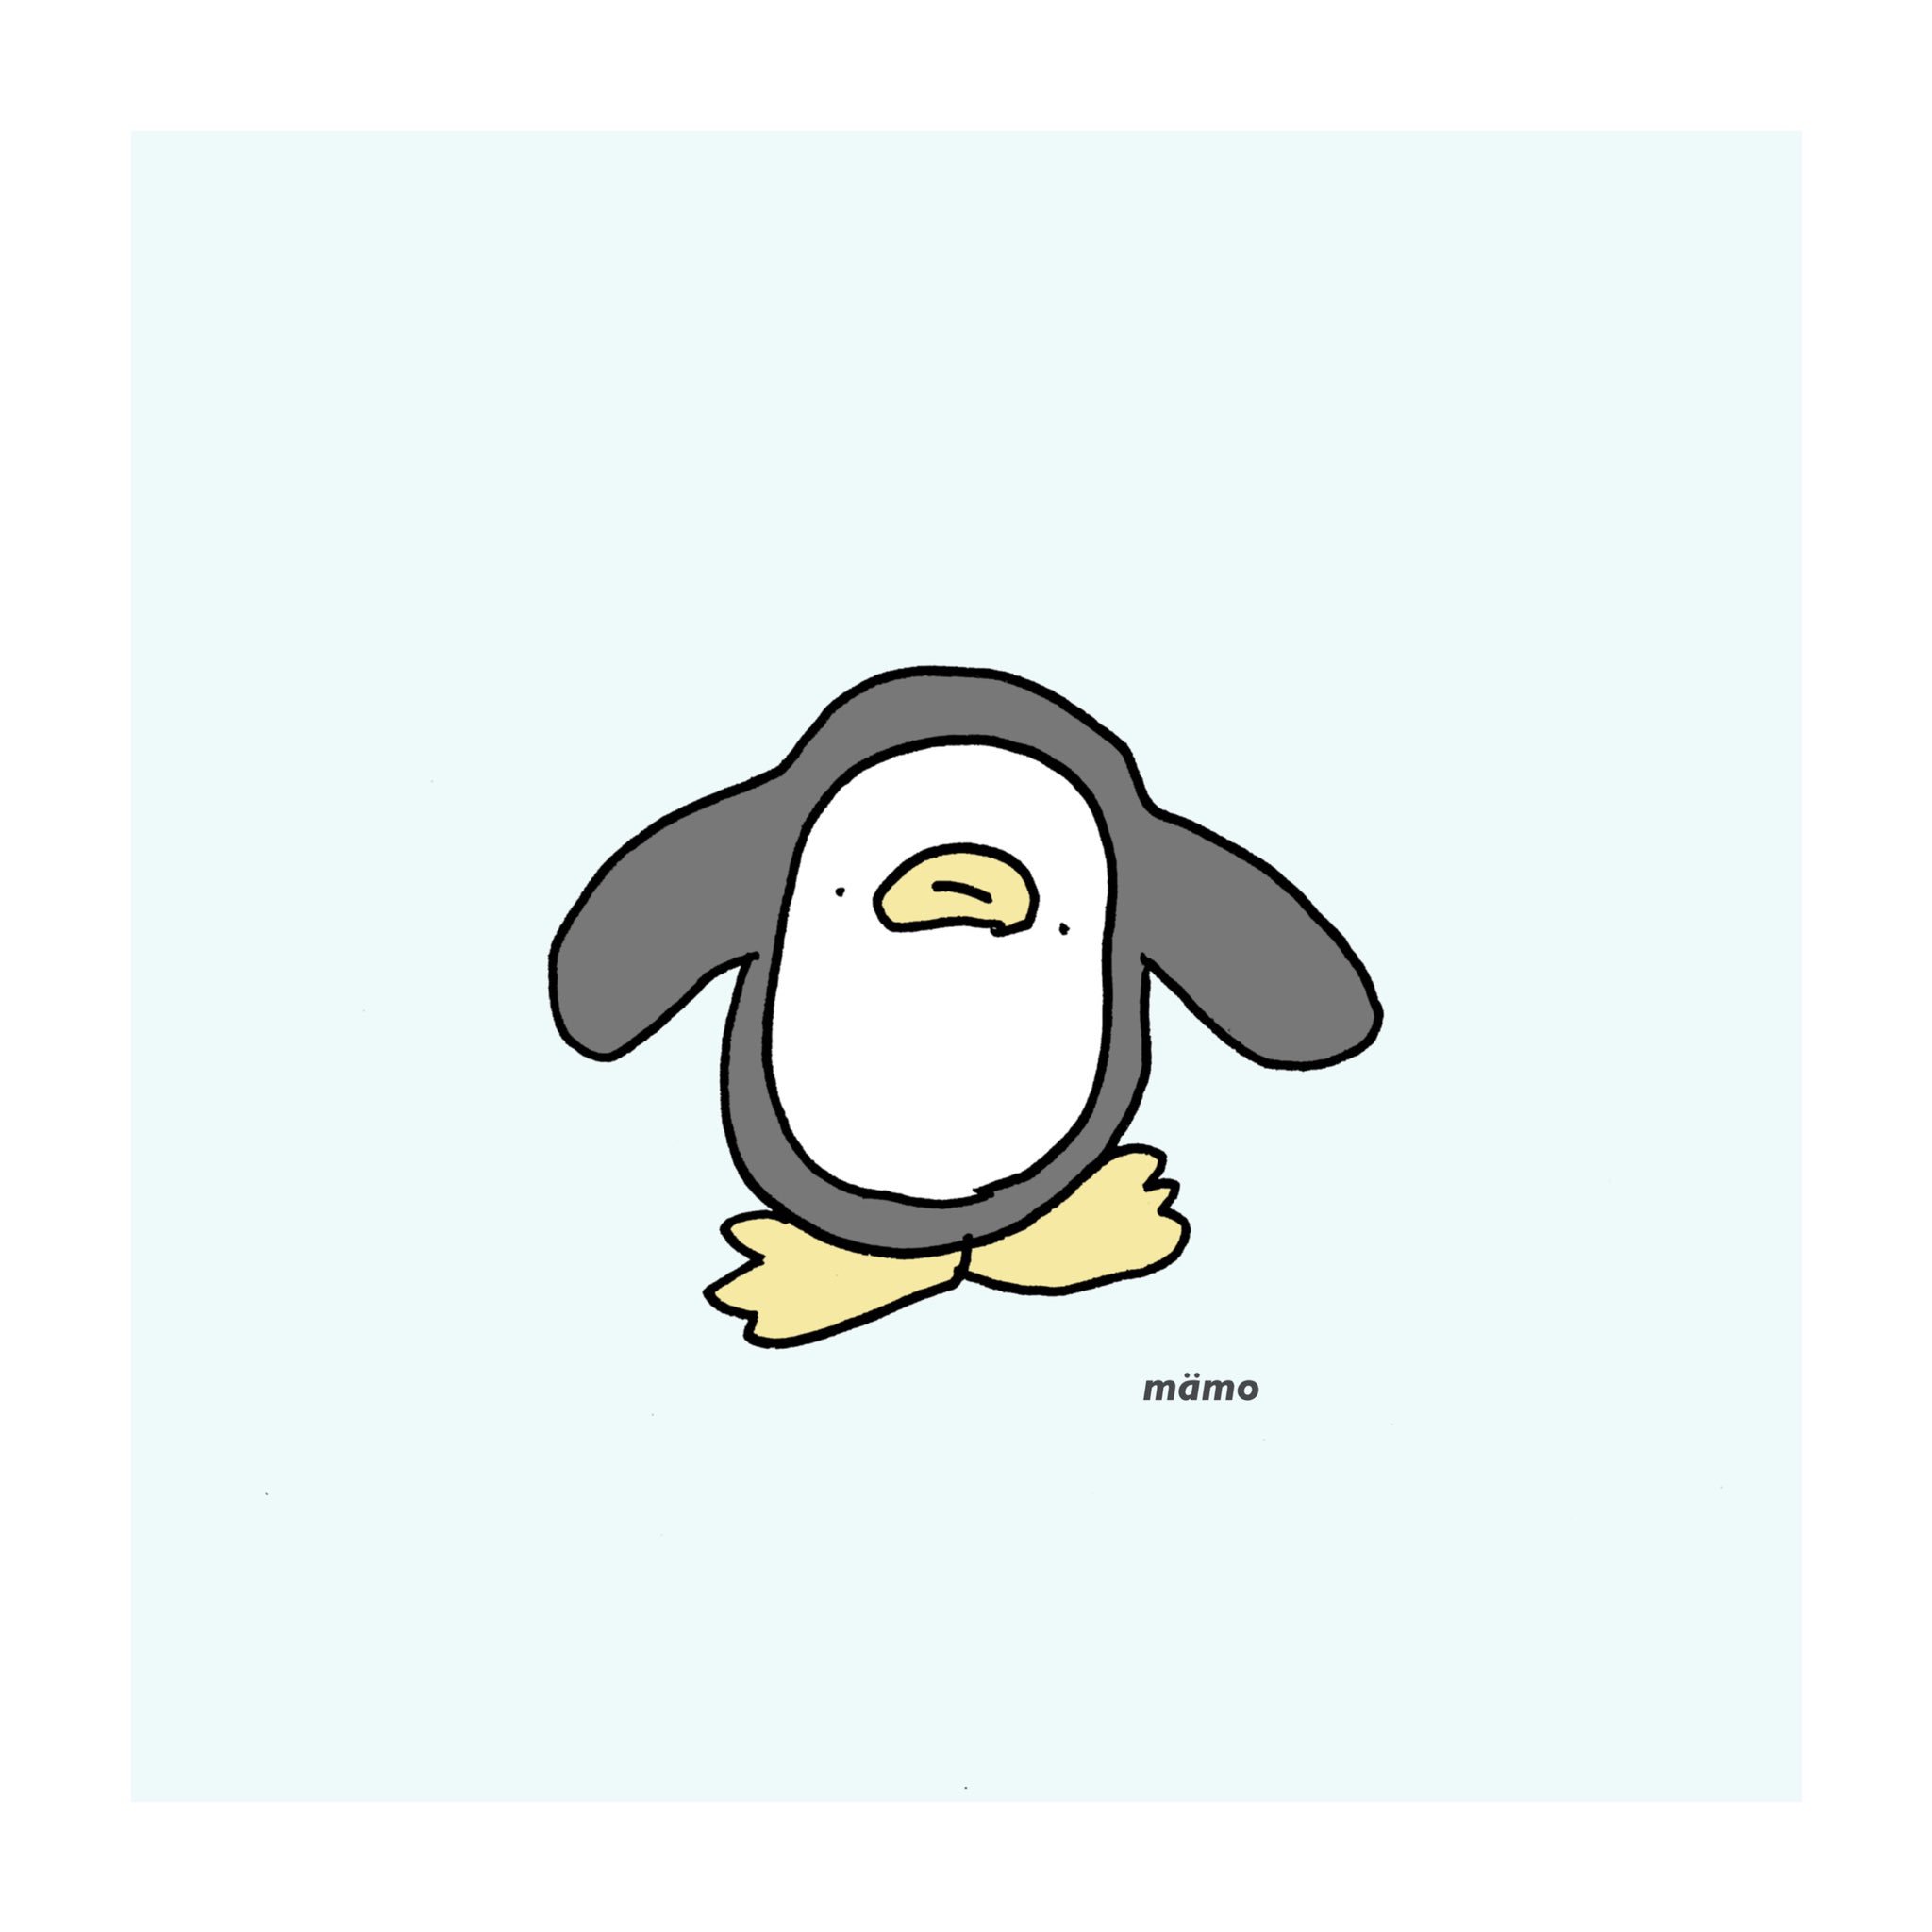 Twitter 上的 Mamo ゆるいペンギン くそゆるいペンギン イラスト シュール 絵描きさんと繋がりたい T Co Z47m1tcnsv Twitter